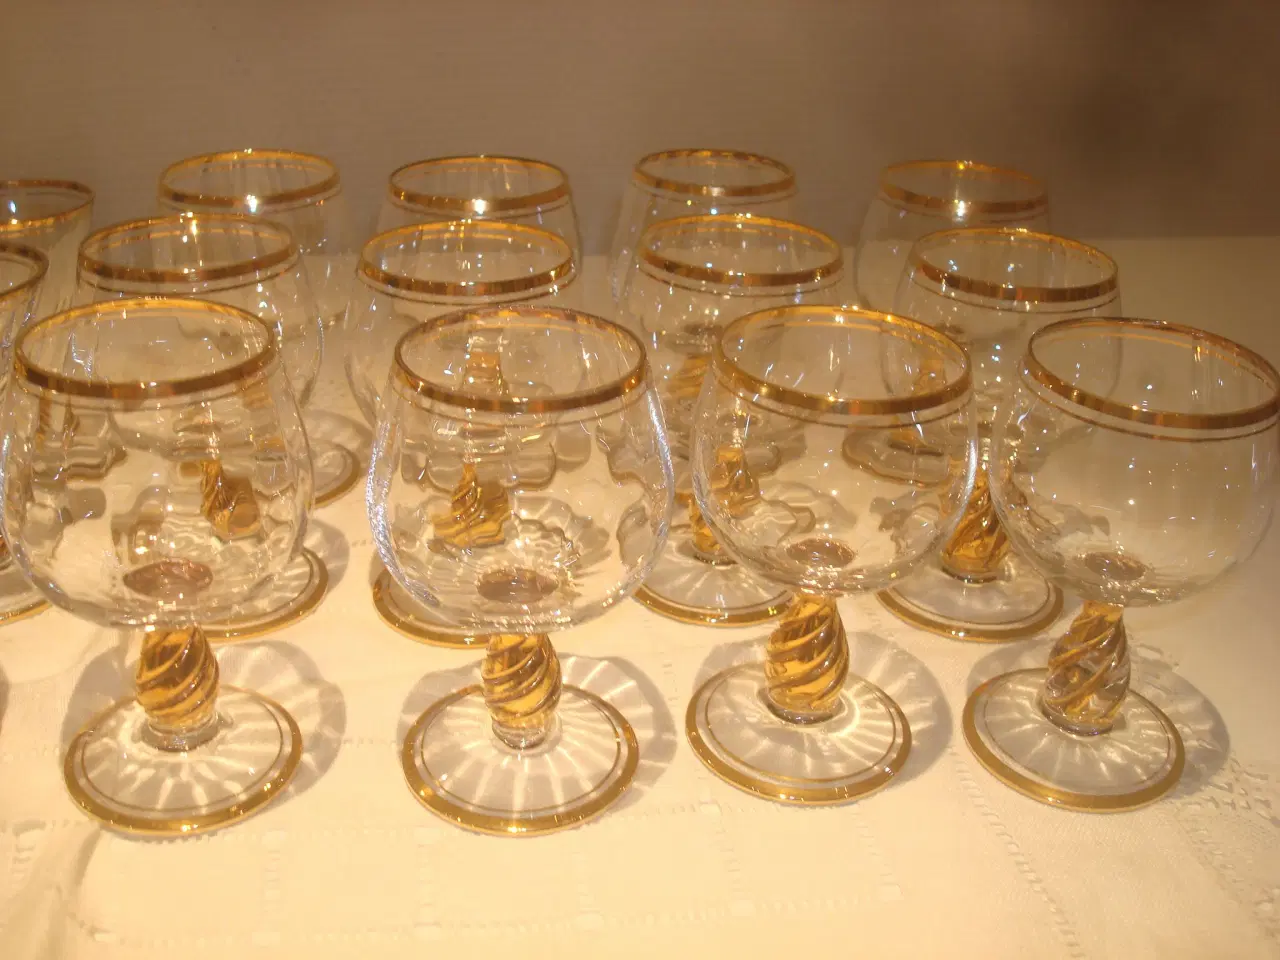 Billede 3 - IDA glas, Holmegård, snaps og cognac